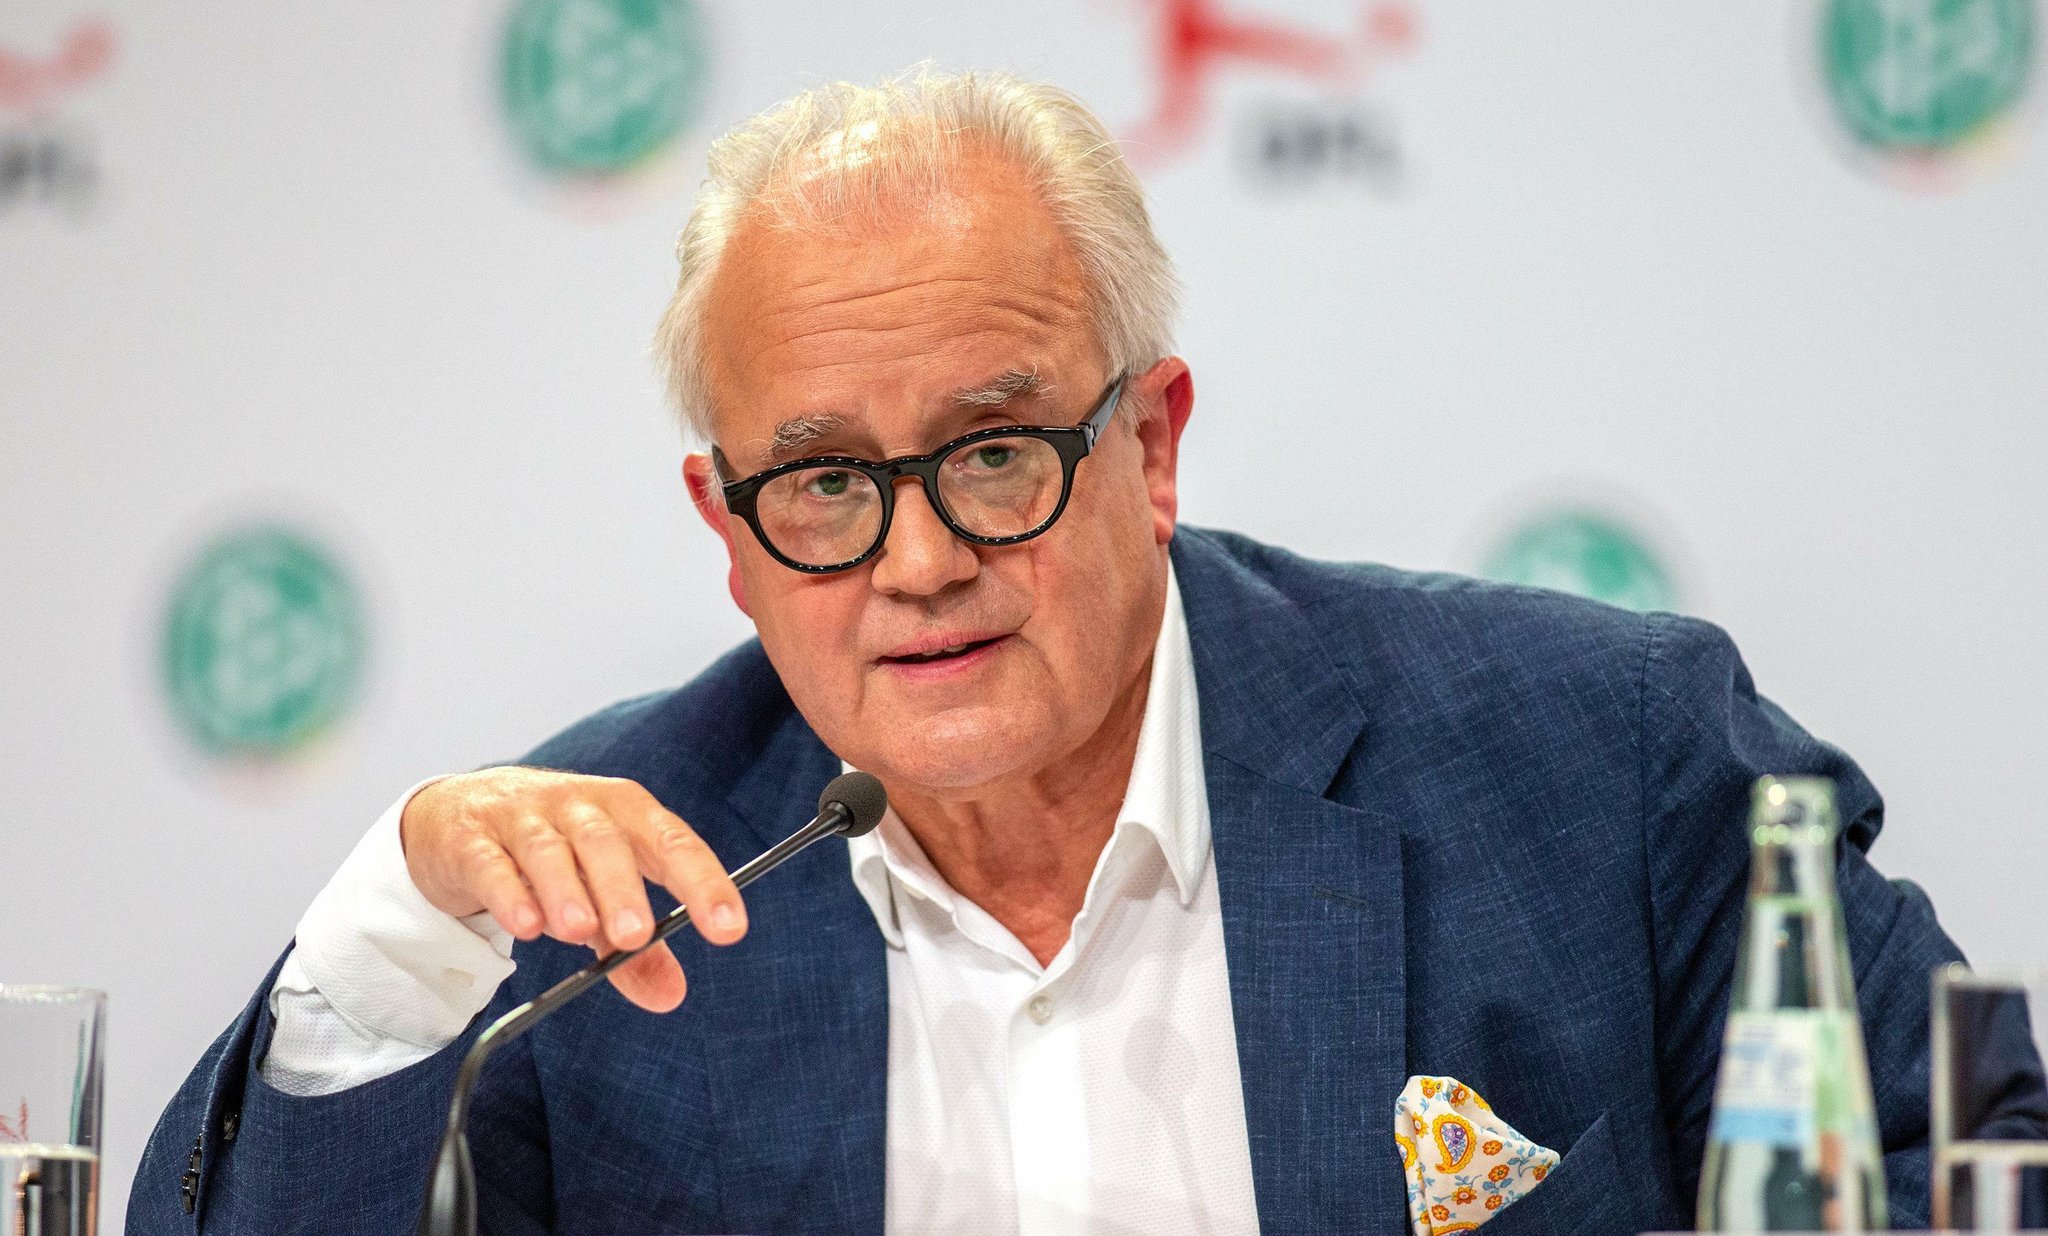 كأس أوروبا للأمم 2020 : رئيس الجامعة الألمانية يؤكد ثقته في إقامة المنافسة في الصيف المقبل